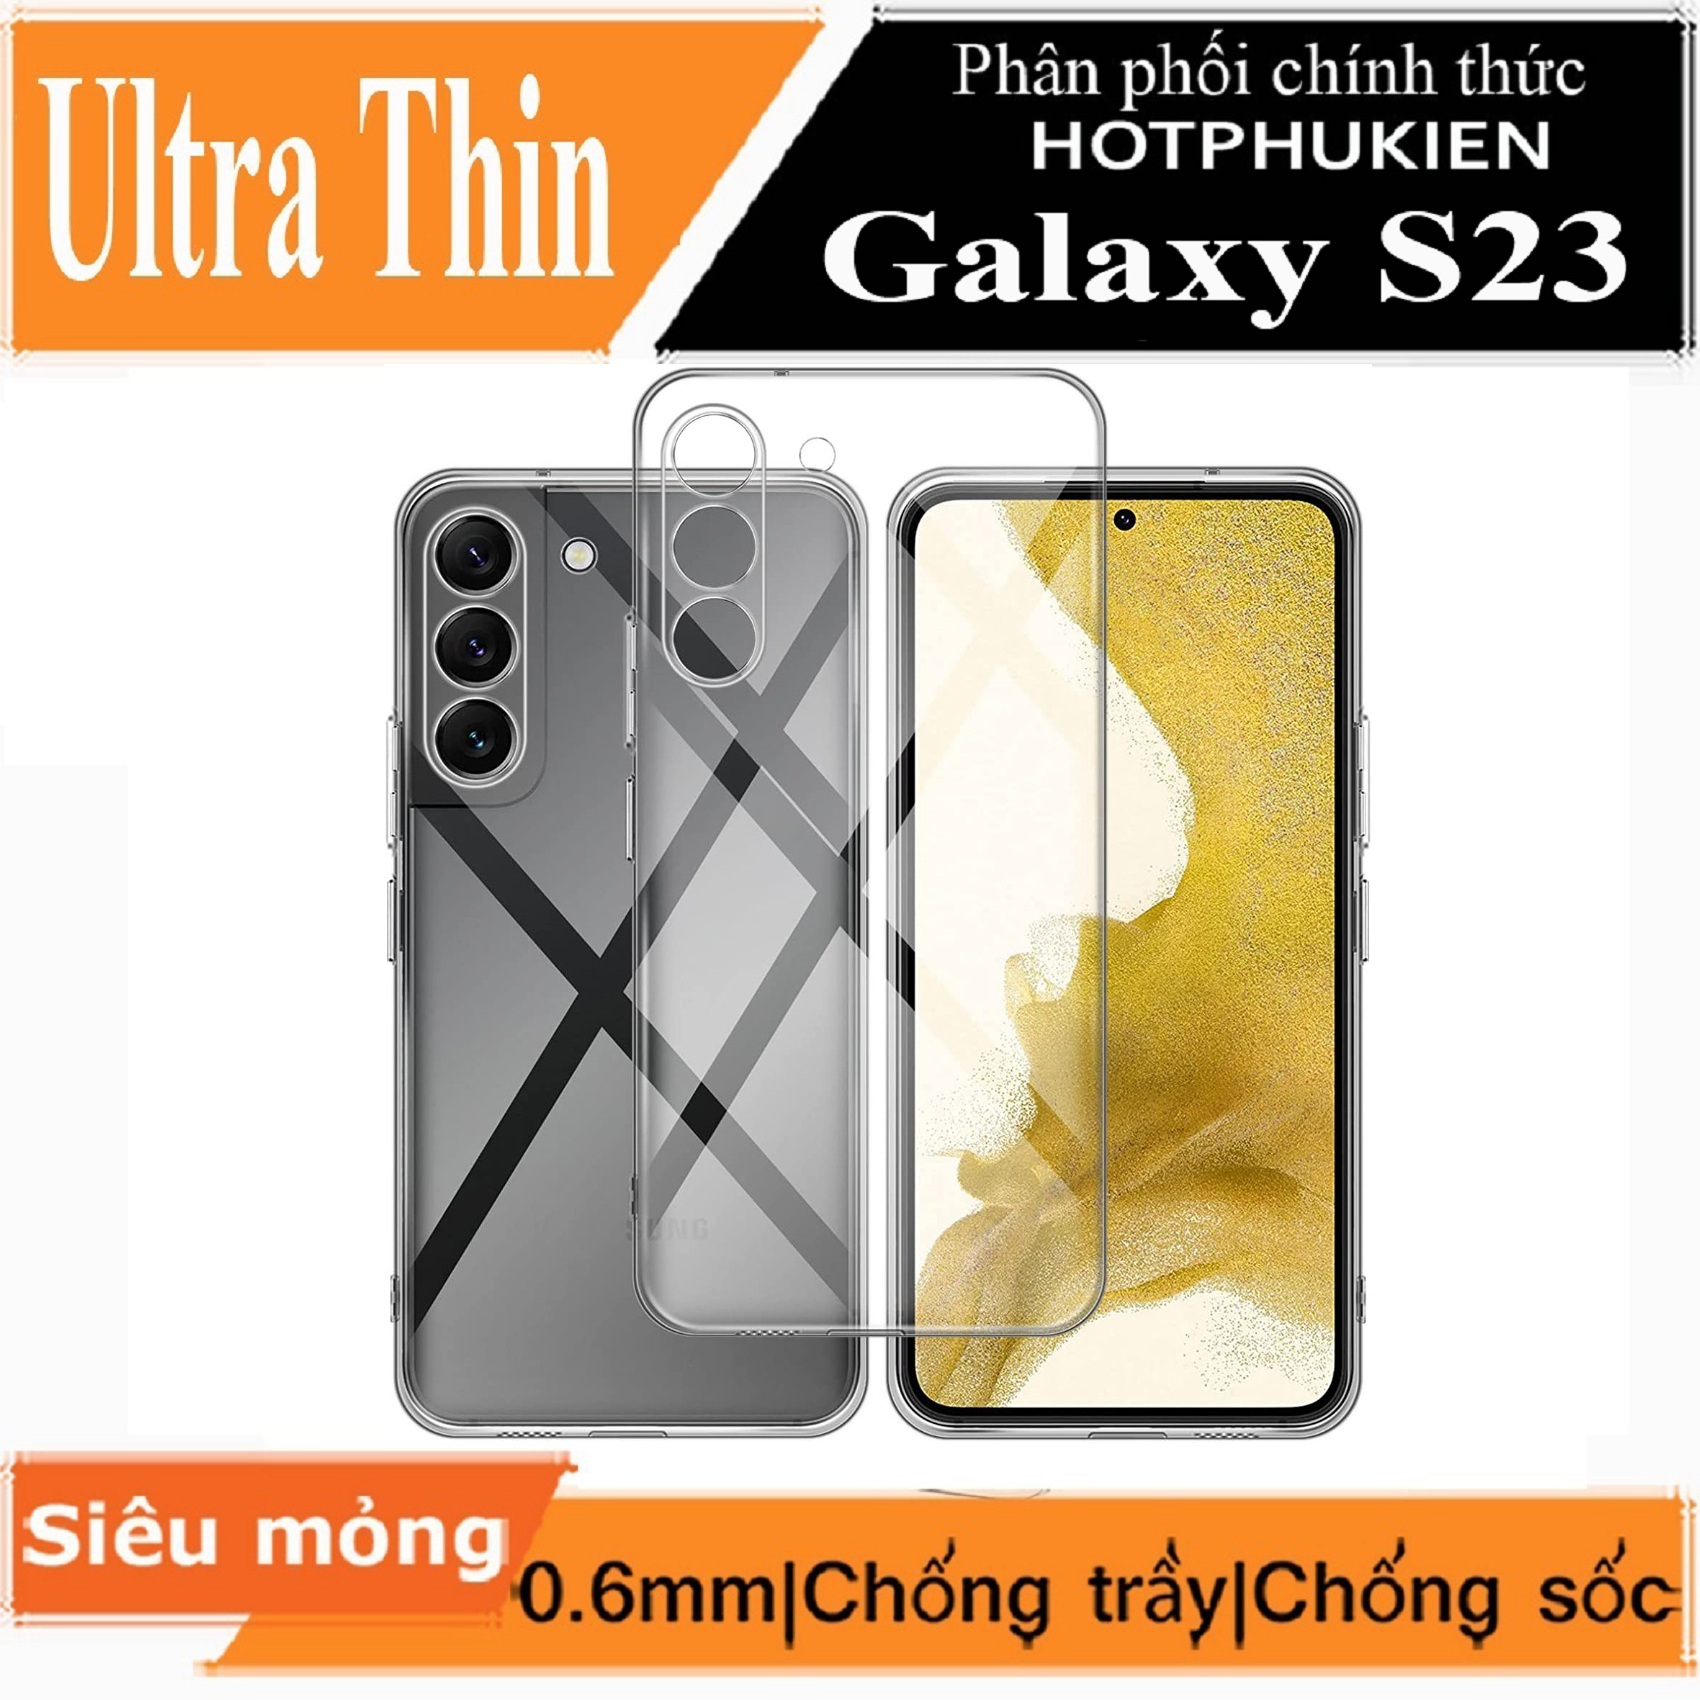 Ốp lưng silicon dẻo trong suốt mỏng 0.6mm cho Samsung Galaxy S23 hiệu Ultra Thin